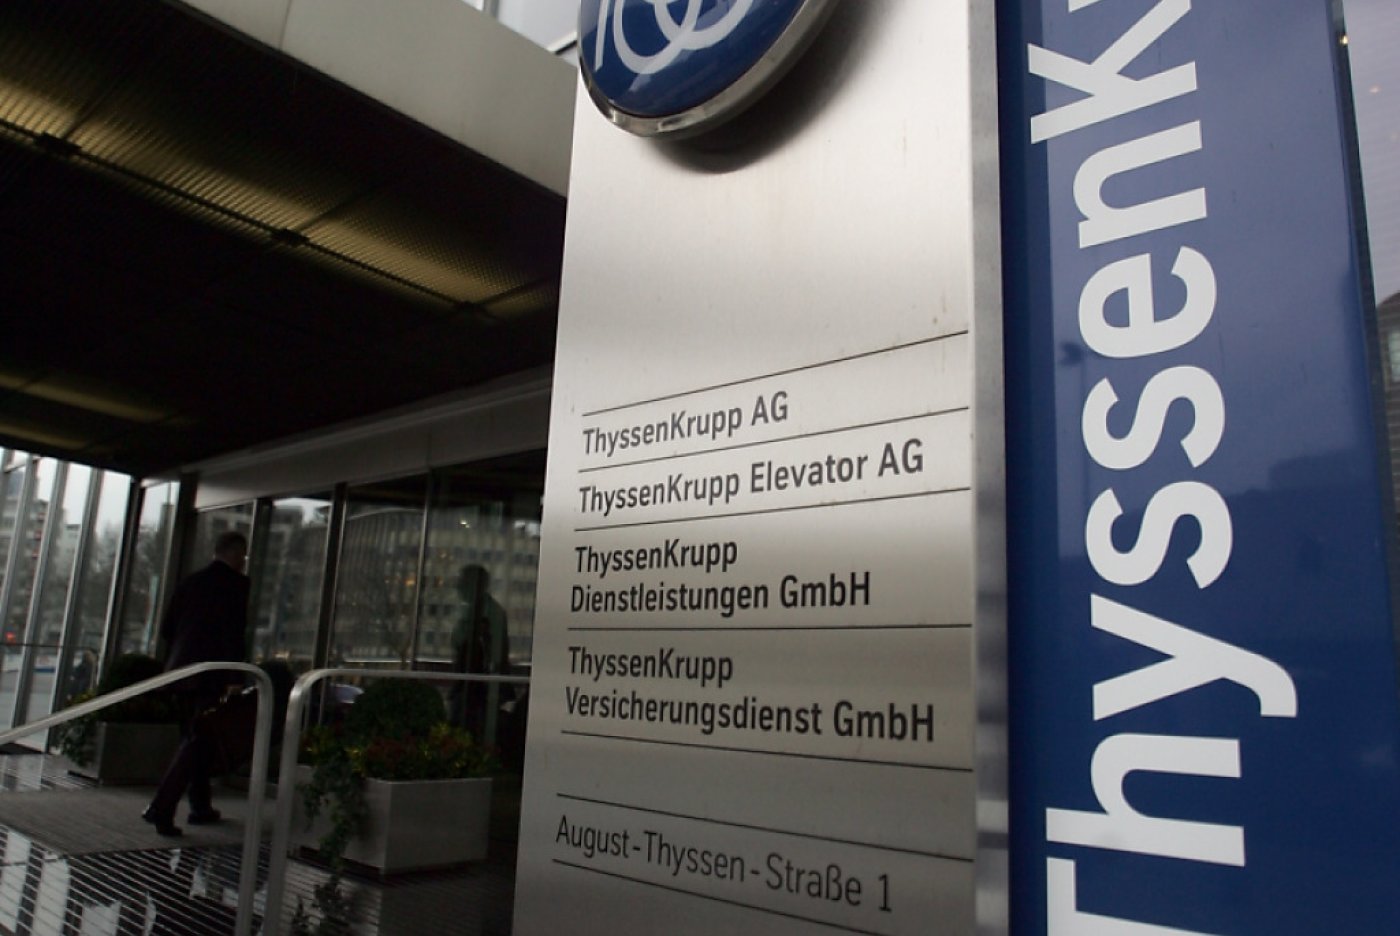 Le groupe ThyssenKrupp toutes activités confondues est valorisé actuellement à environ 3 milliards d'euros. (AP Photo/Roberto Pfeil) KEYSTONE